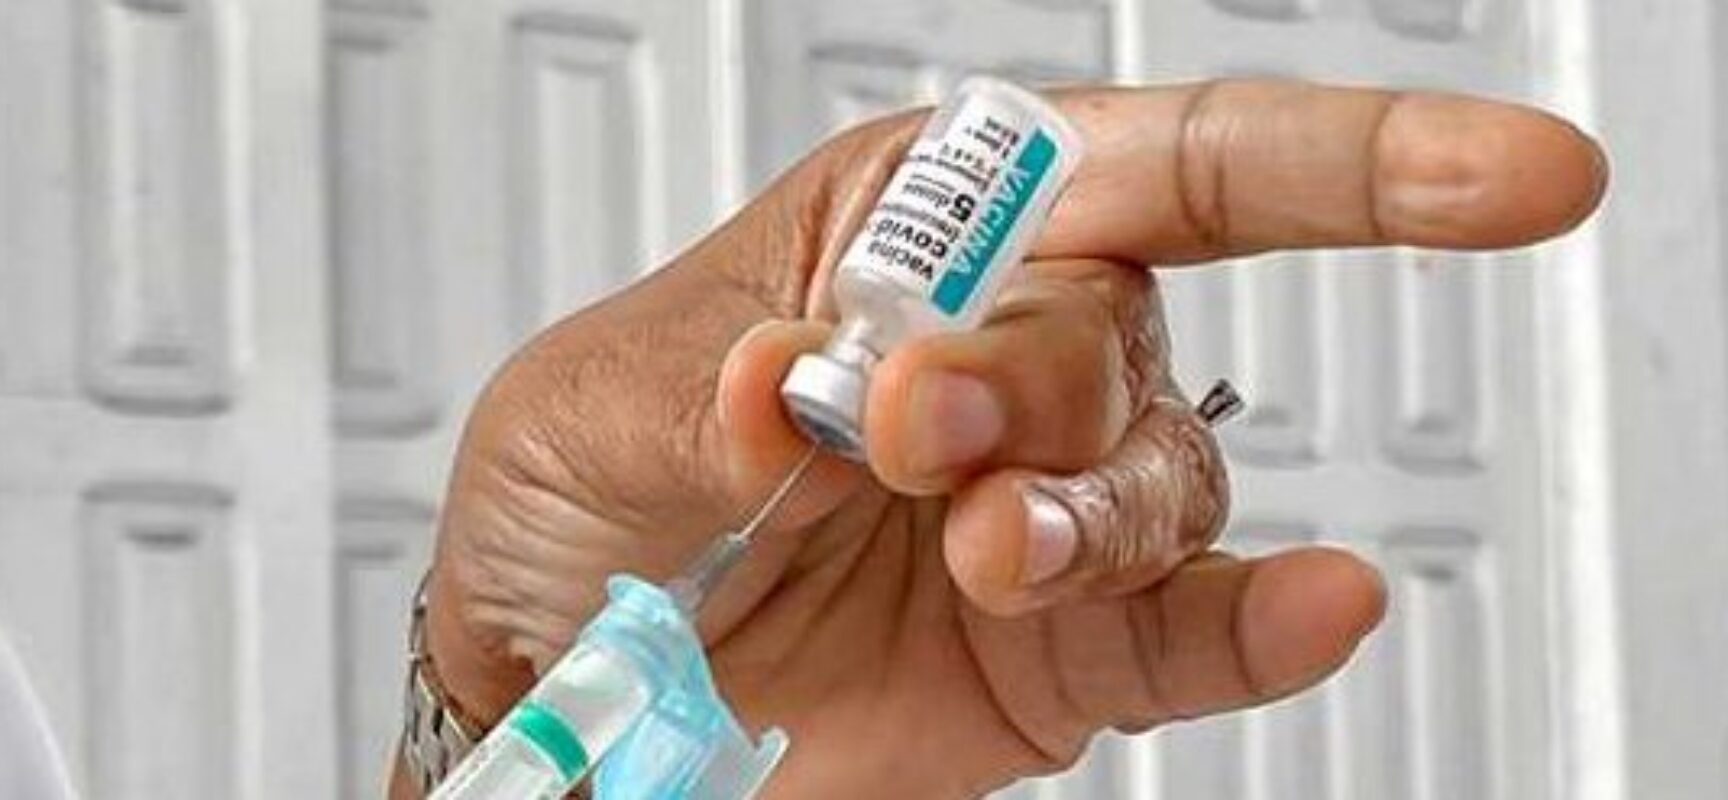 Ilhéus realiza mutirão de vacinação contra a Covid-19 nesta quarta-feira (20)